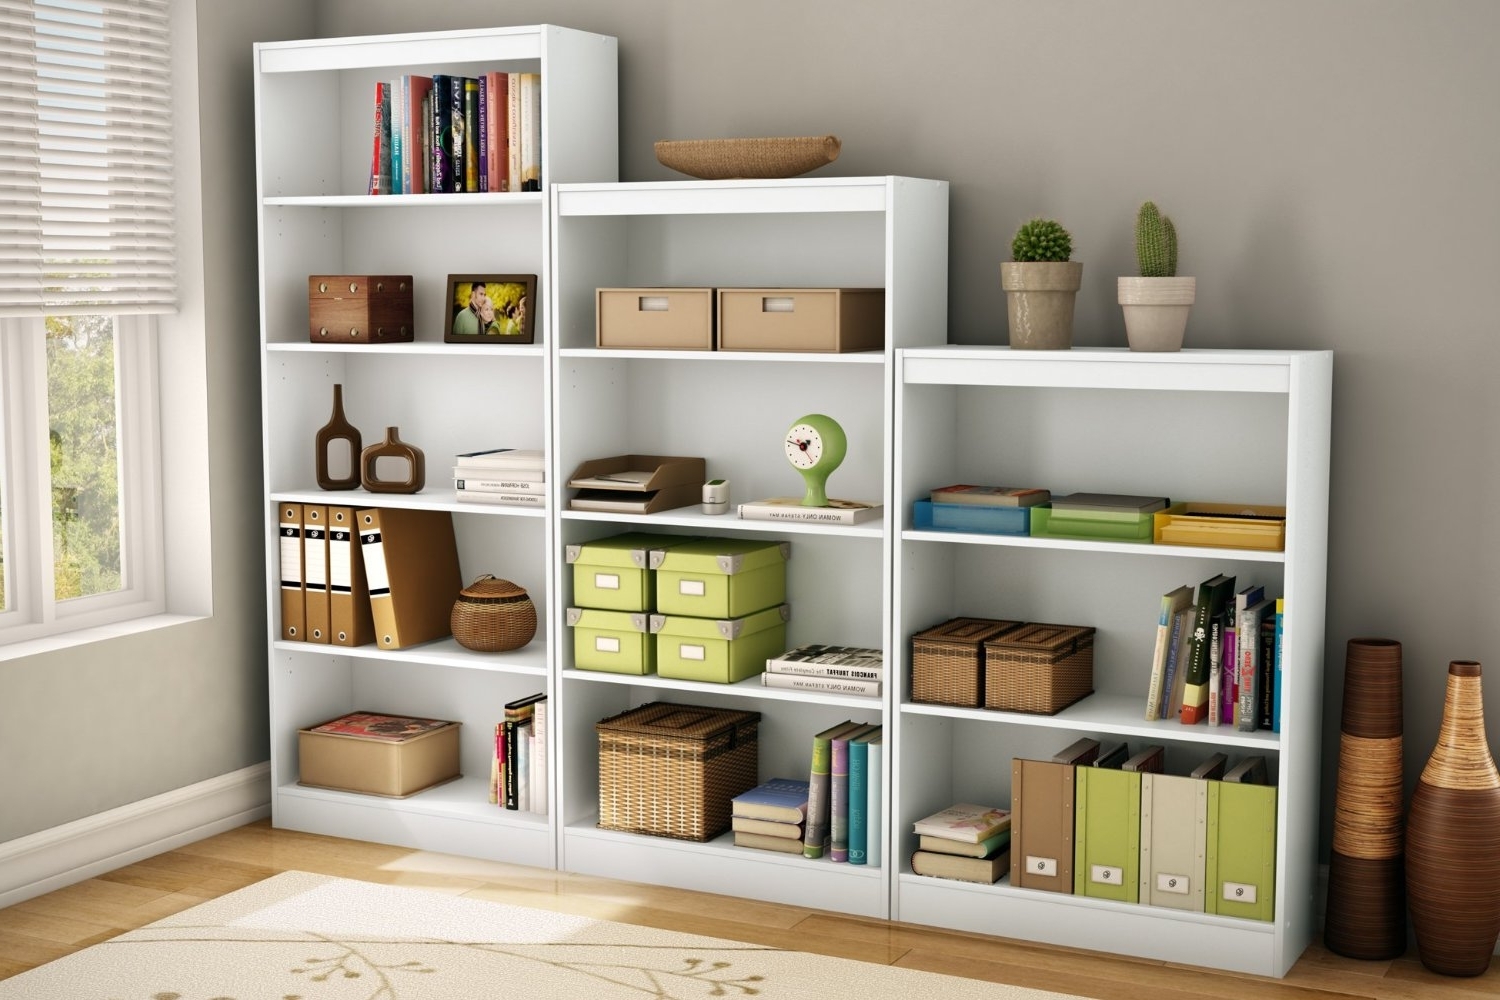 Как организовать хранение вещей в однокомнатной квартире чтобы легко поддерживать порядок?